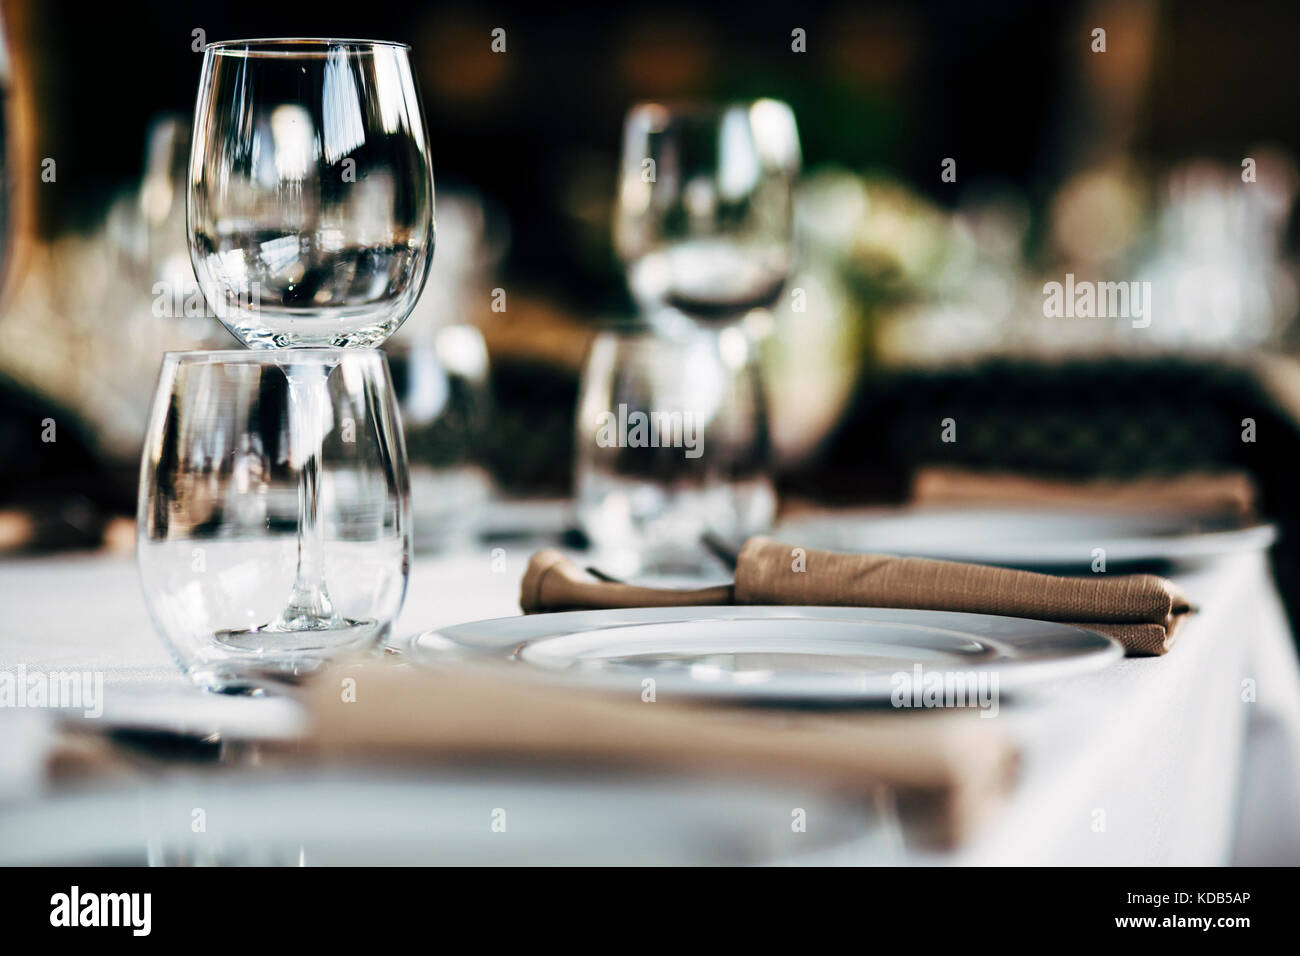 Luxus Tabelle Einstellungen für feine und Glaswaren, schöner Hintergrund verschwommen. Vorbereitung für Urlaub Weihnachten und hannukah Abendessen Nacht. Stockfoto